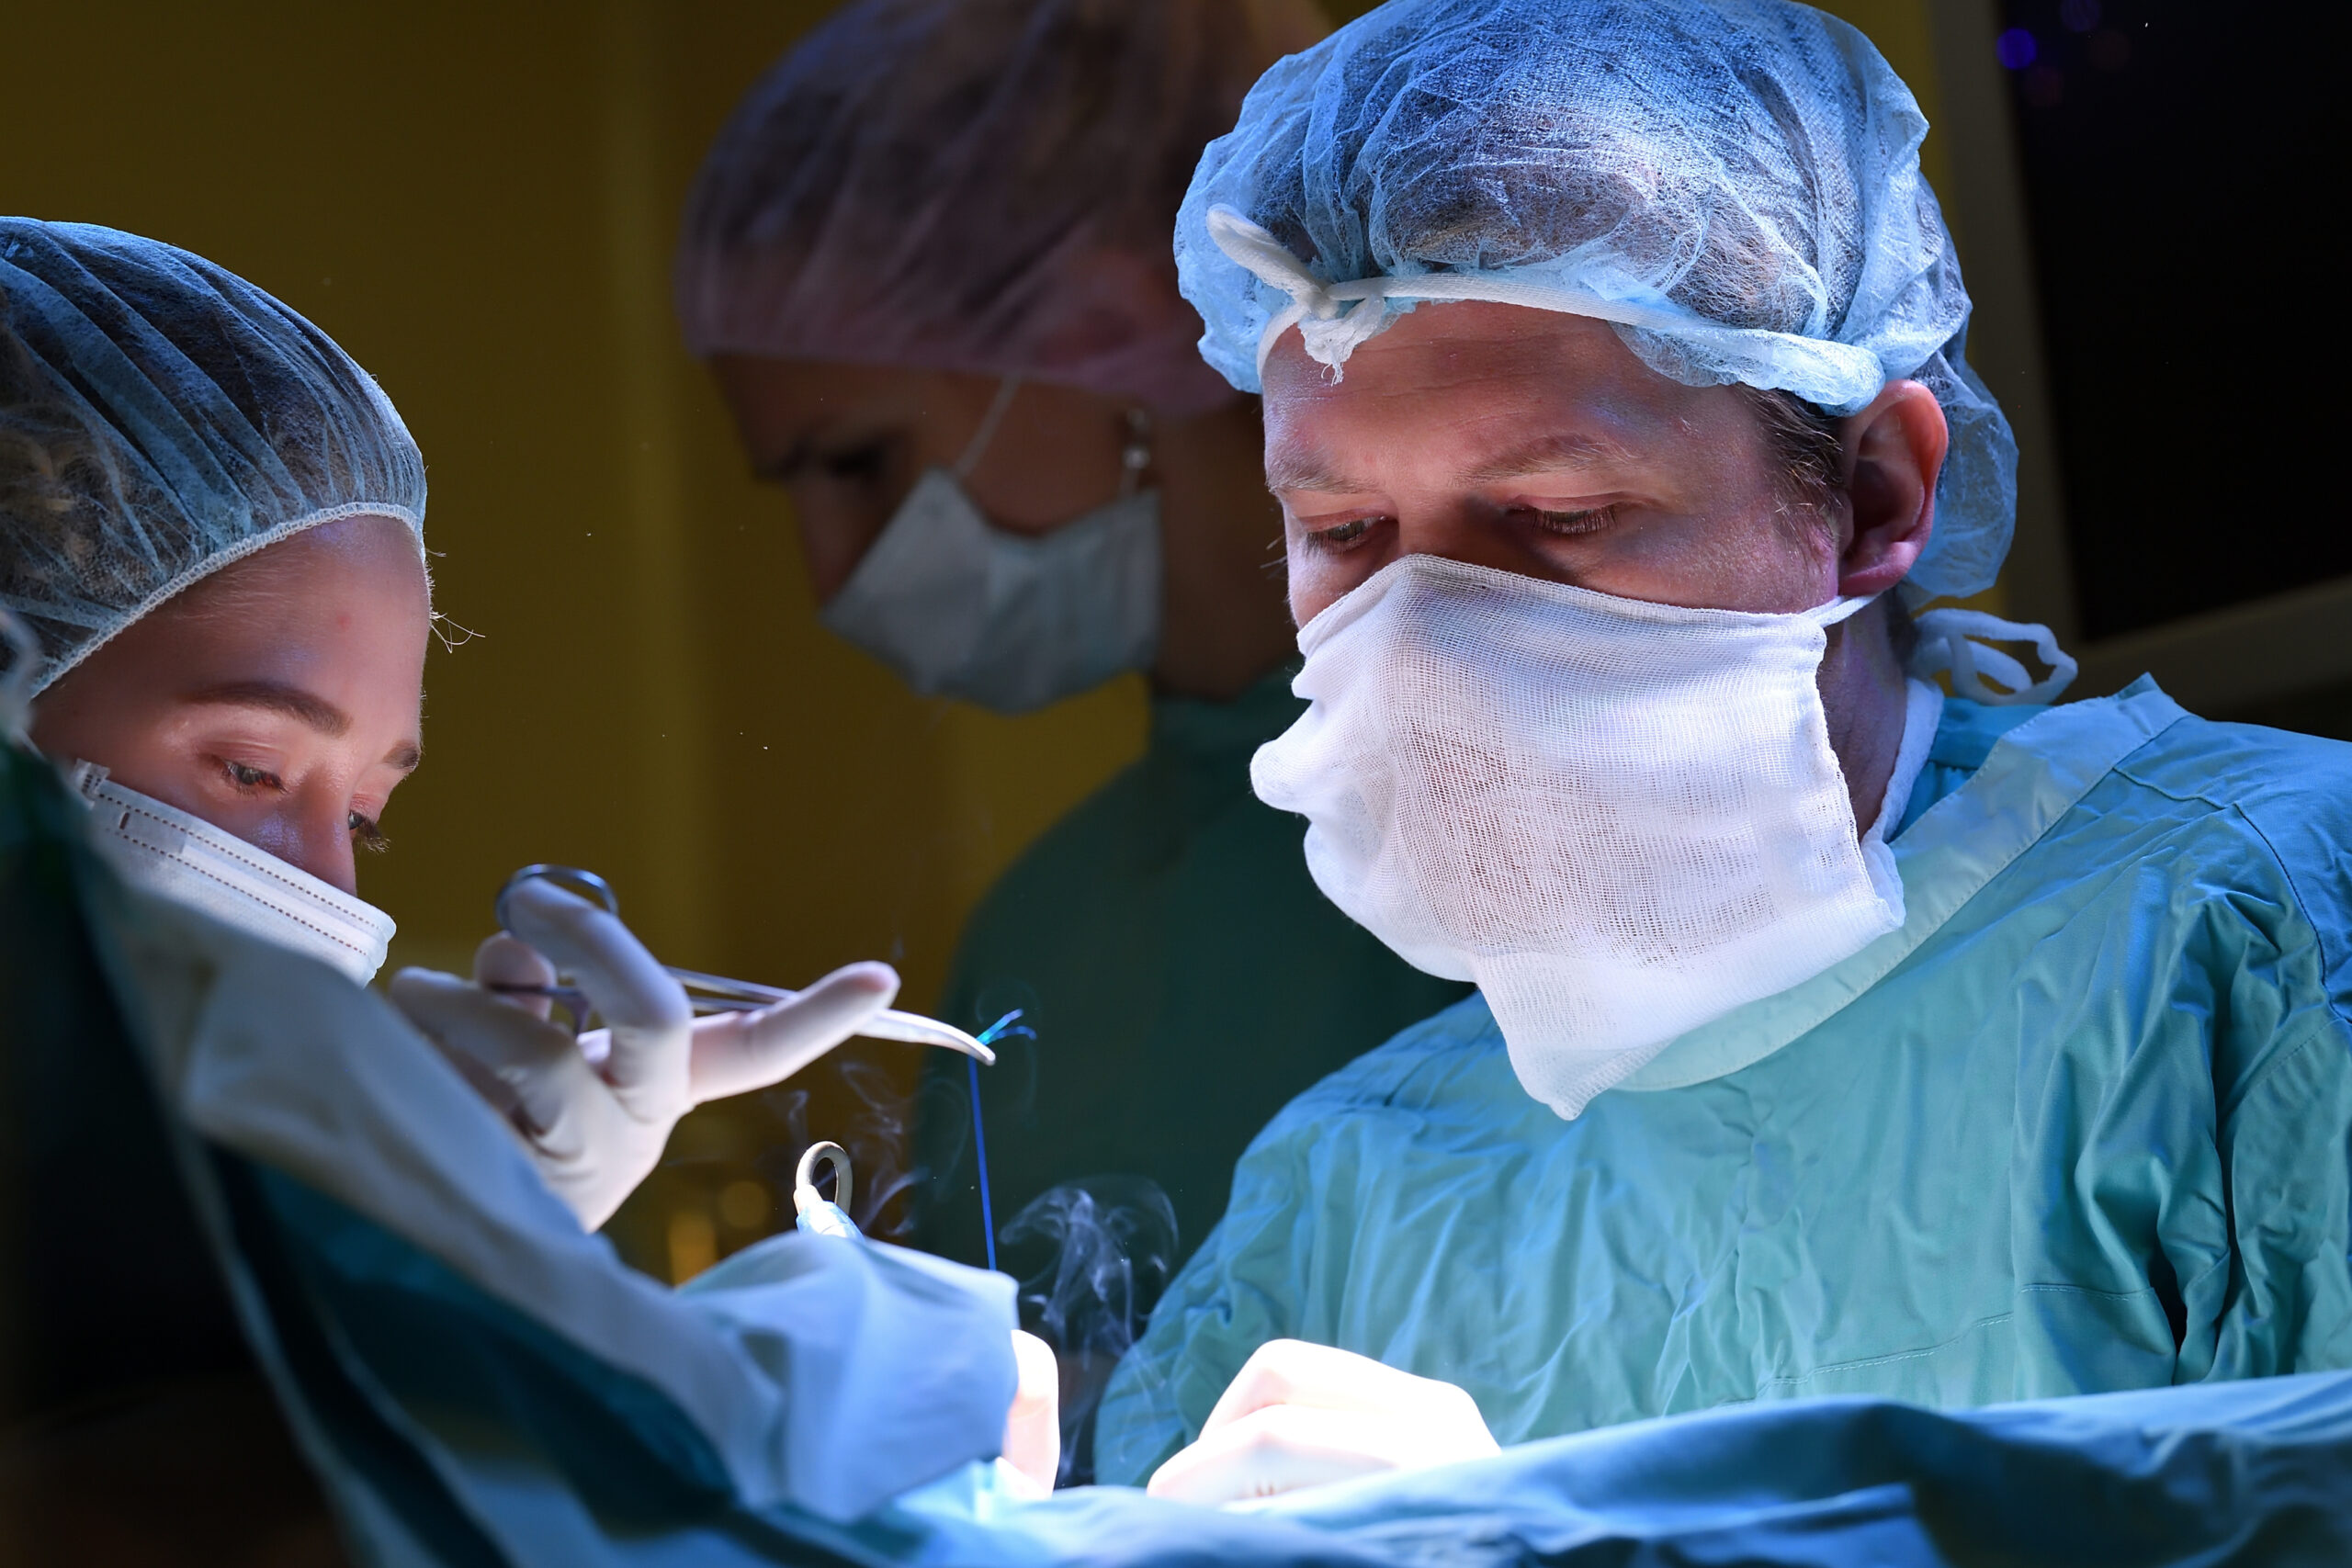 московские хирурги использовали слизистую щеки для восстановления мочеполовой системы ребенка после аварии